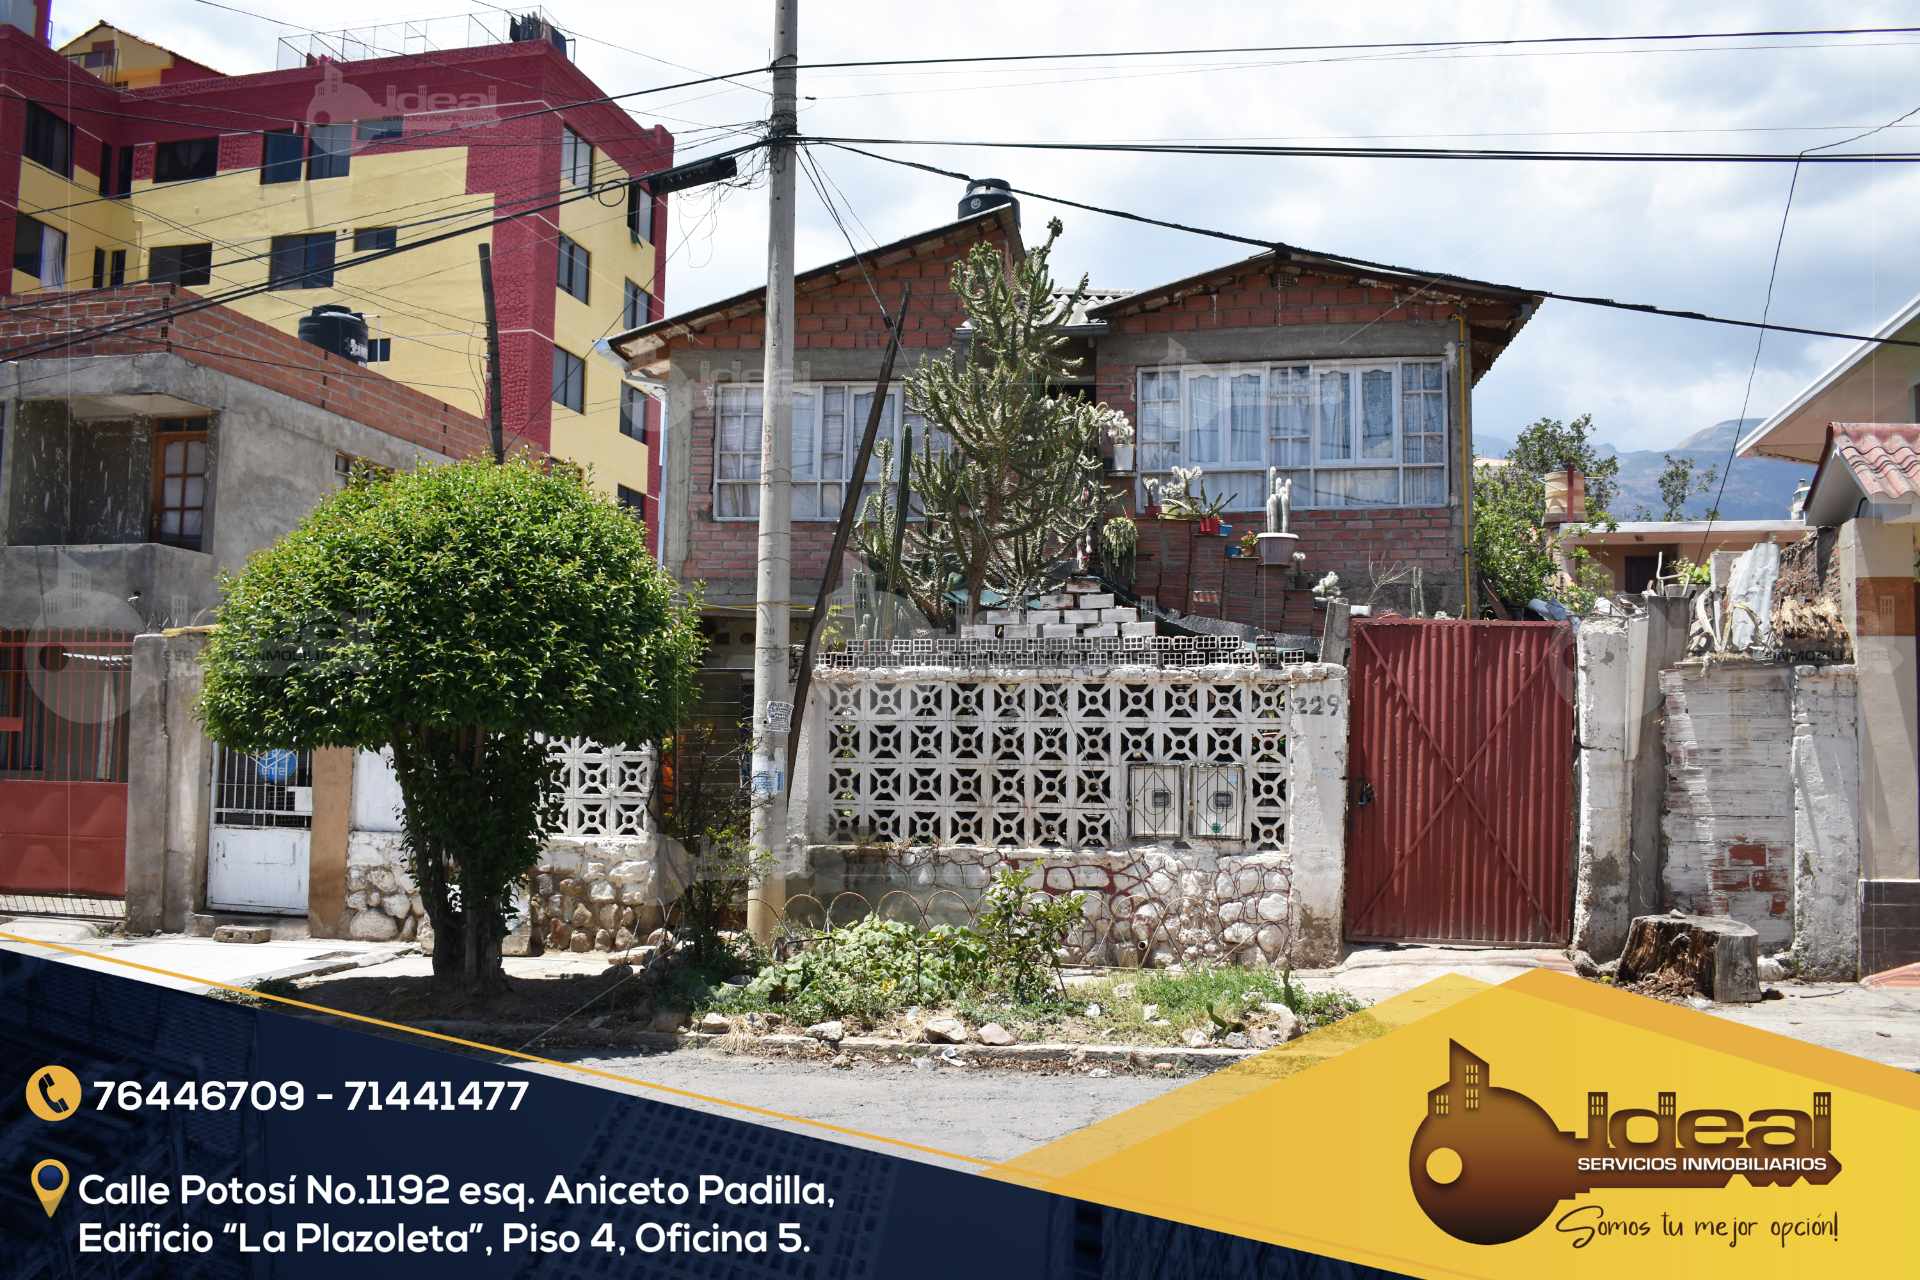 Casa en VentaCasa a precio de lote, inmediaciones Av. Villarroel y Tarija  4 dormitorios 3 baños  Foto 1